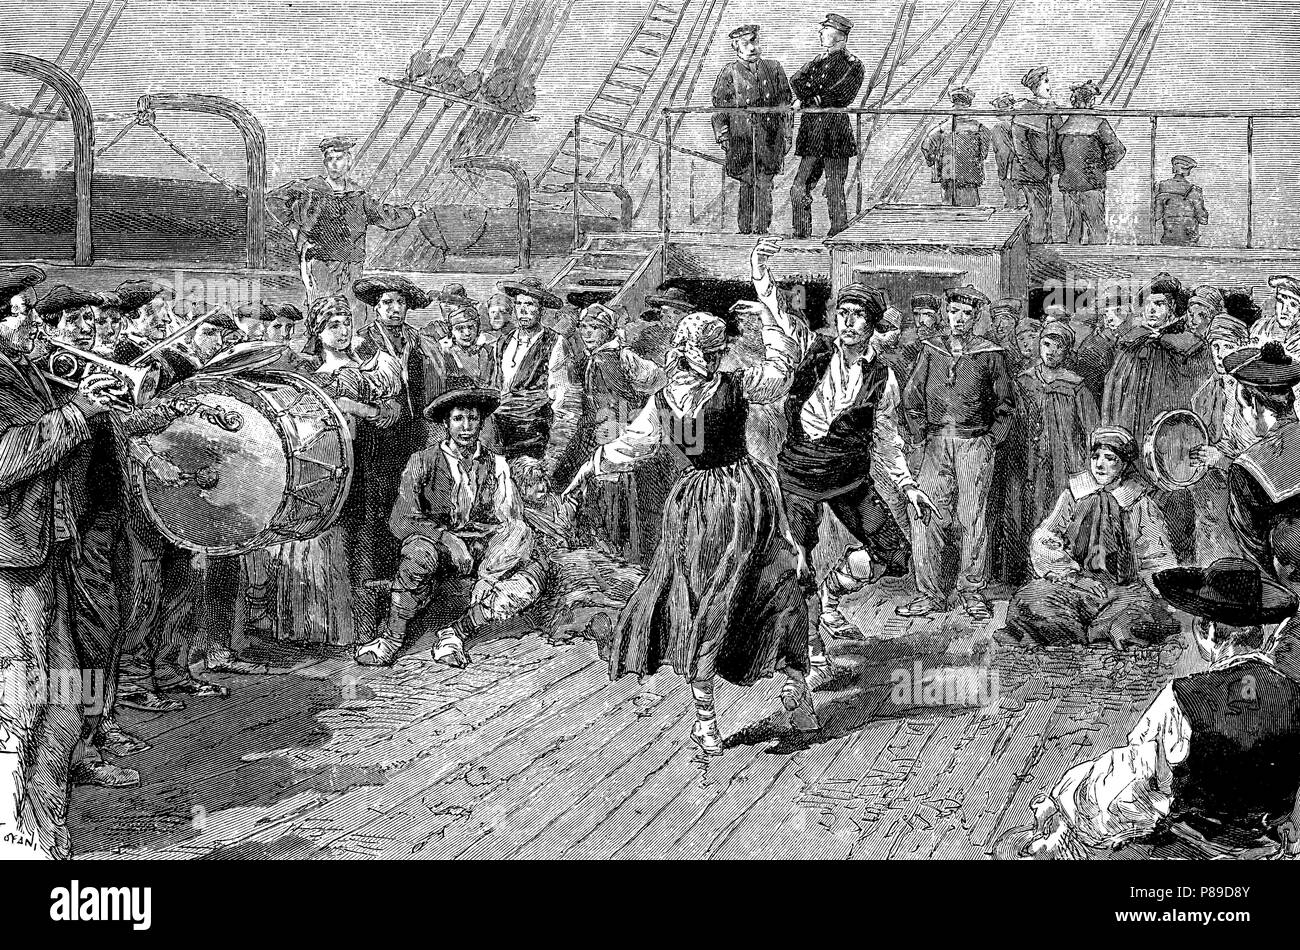 Emigrantes españoles a bordo del barco que les transporta a Uruguay. Grabado de 1887. Stock Photo